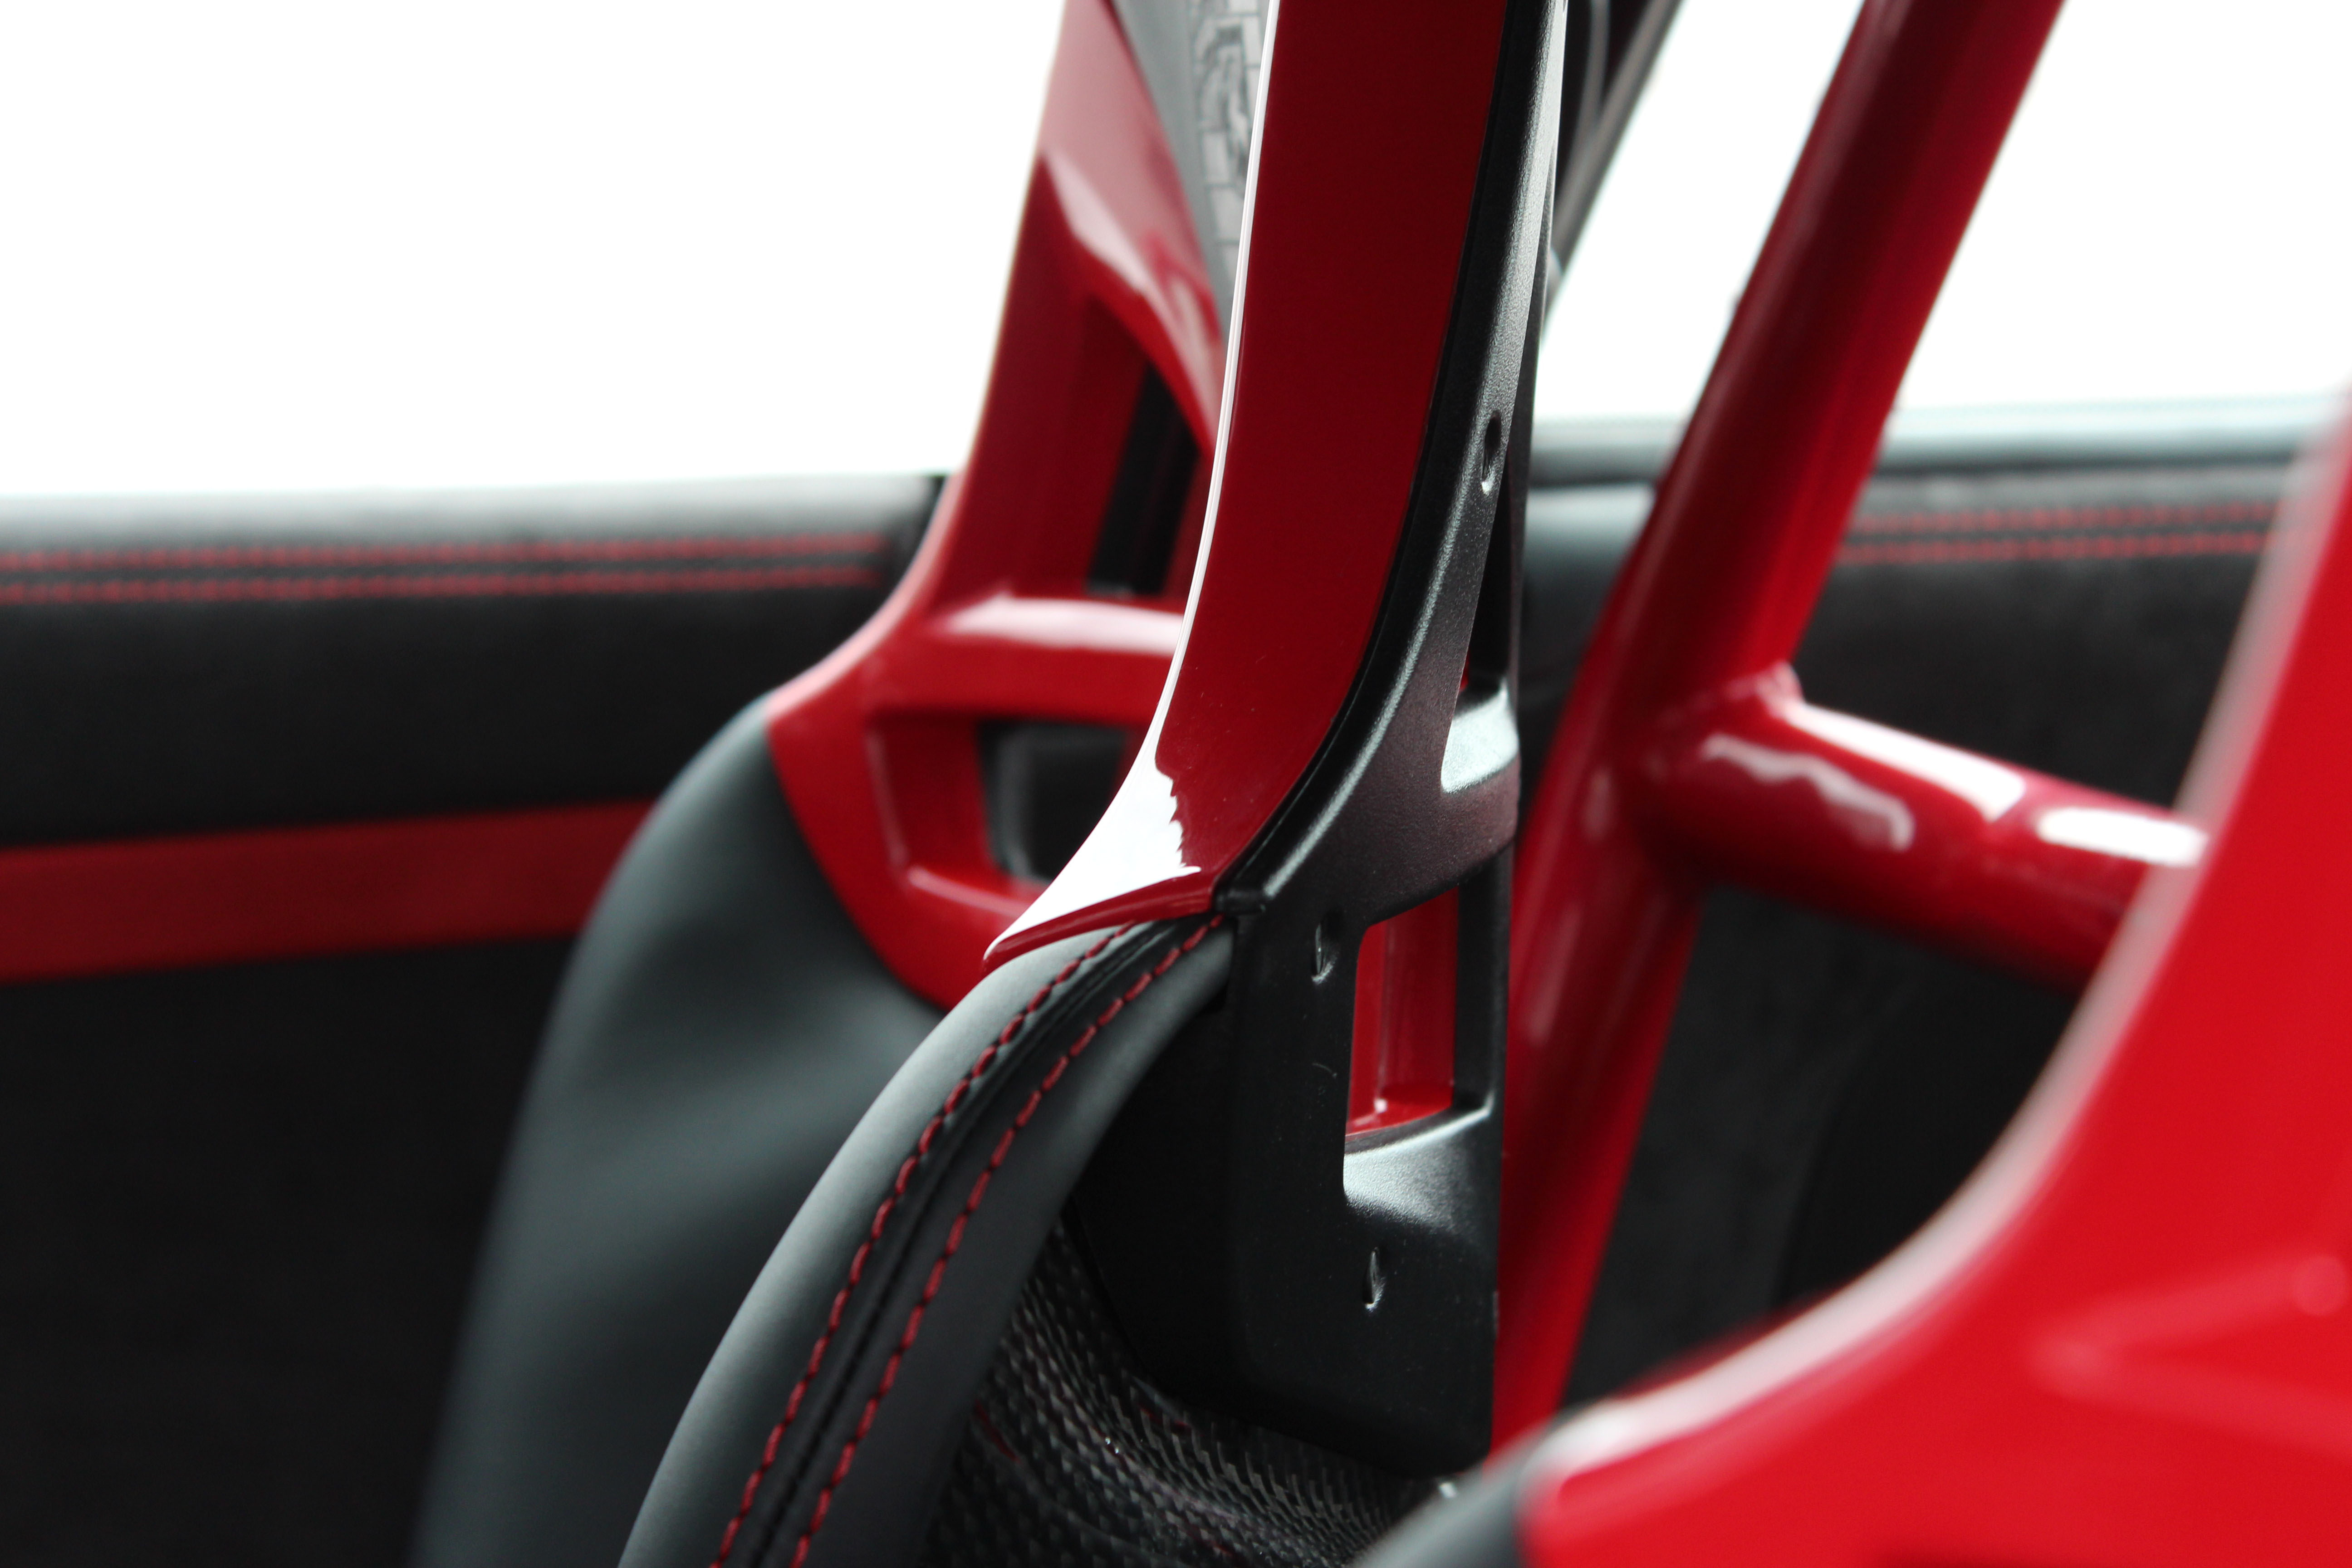 Porsche 911 997 gt3 bucket seat headrest detail by Designls